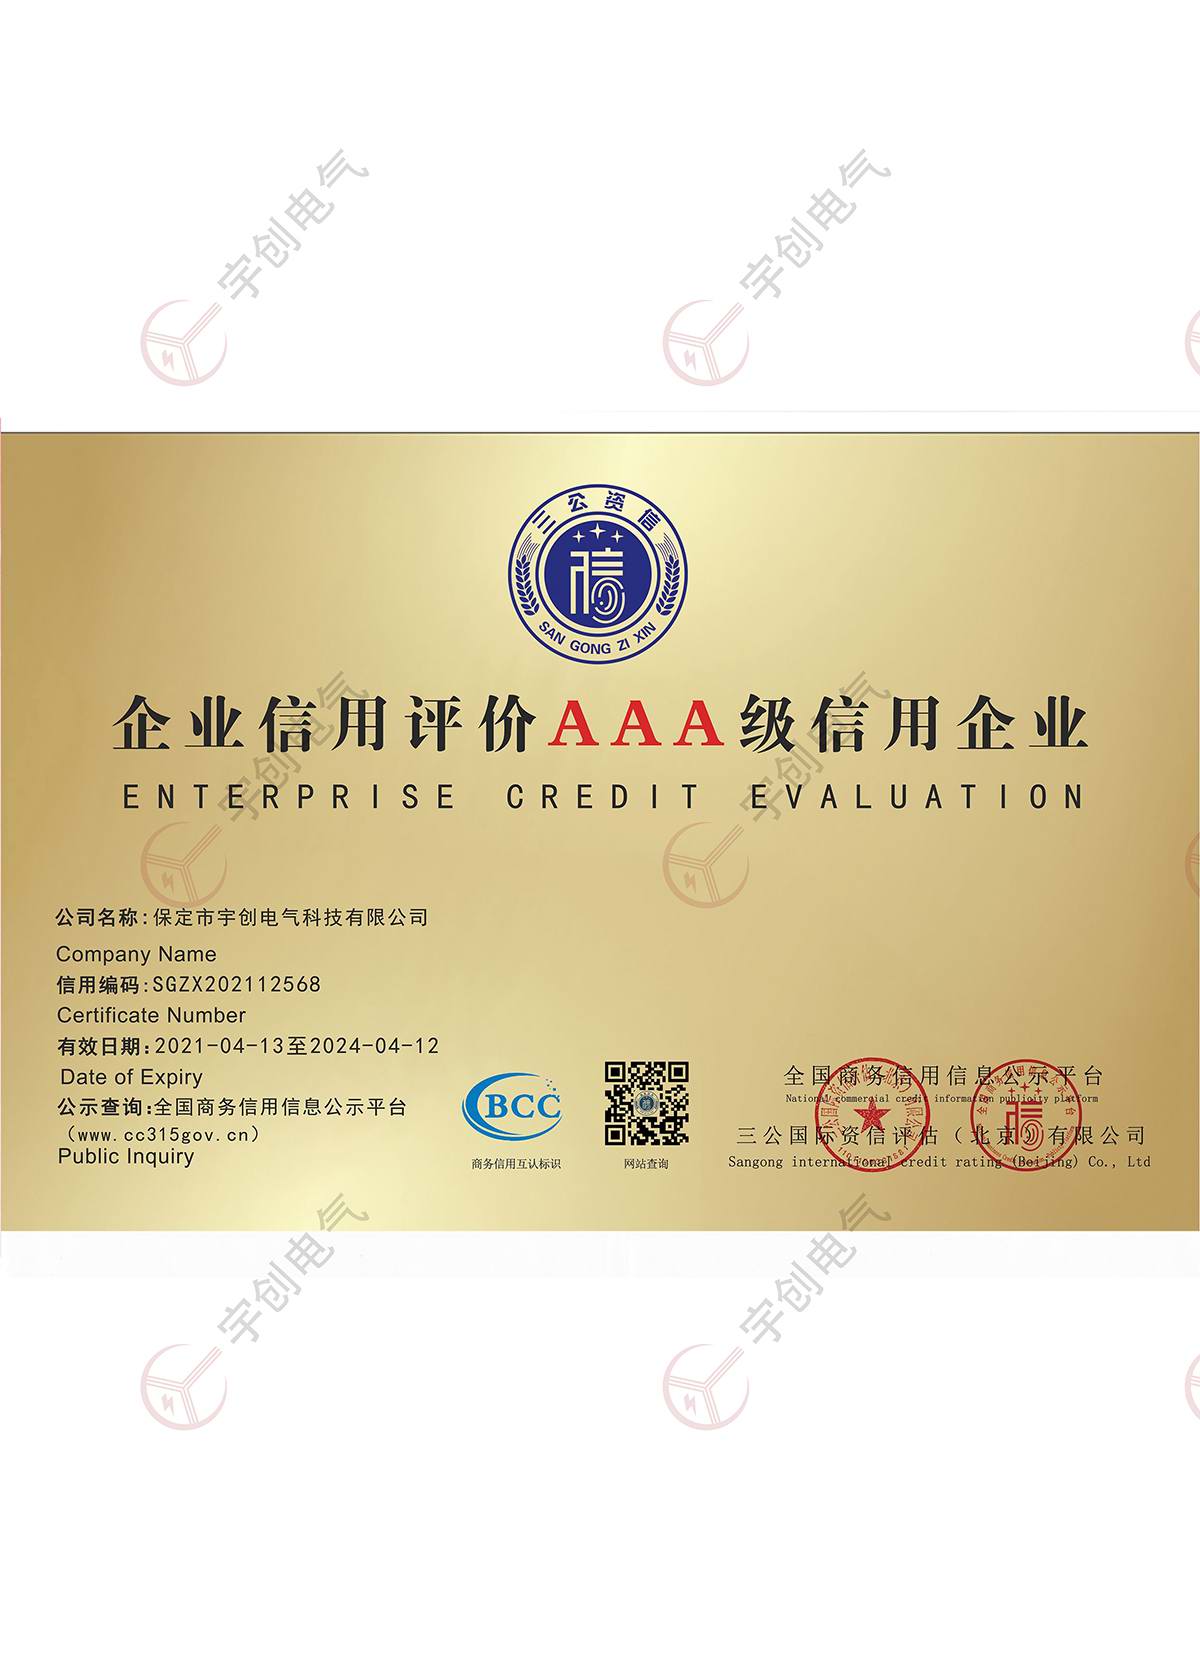 忻州企业信用评价AAA级信用企业